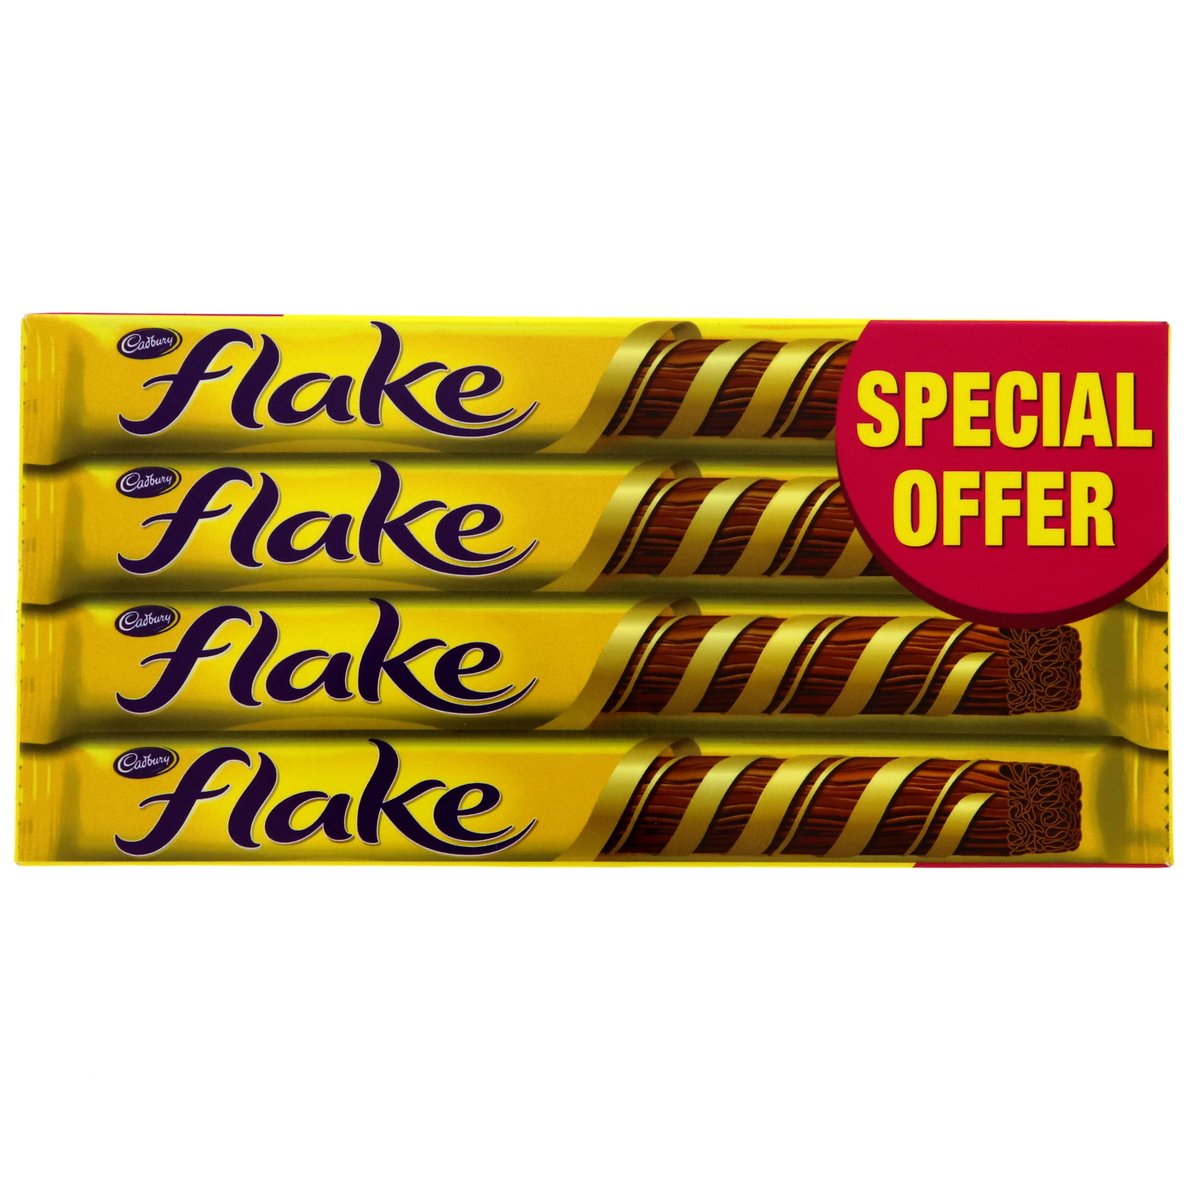 Buy Cadbury Flake Chocolate Bar 4 x 32 g Online at Best Price | Covrd Choco.Bars&Tab | Lulu UAE in UAE